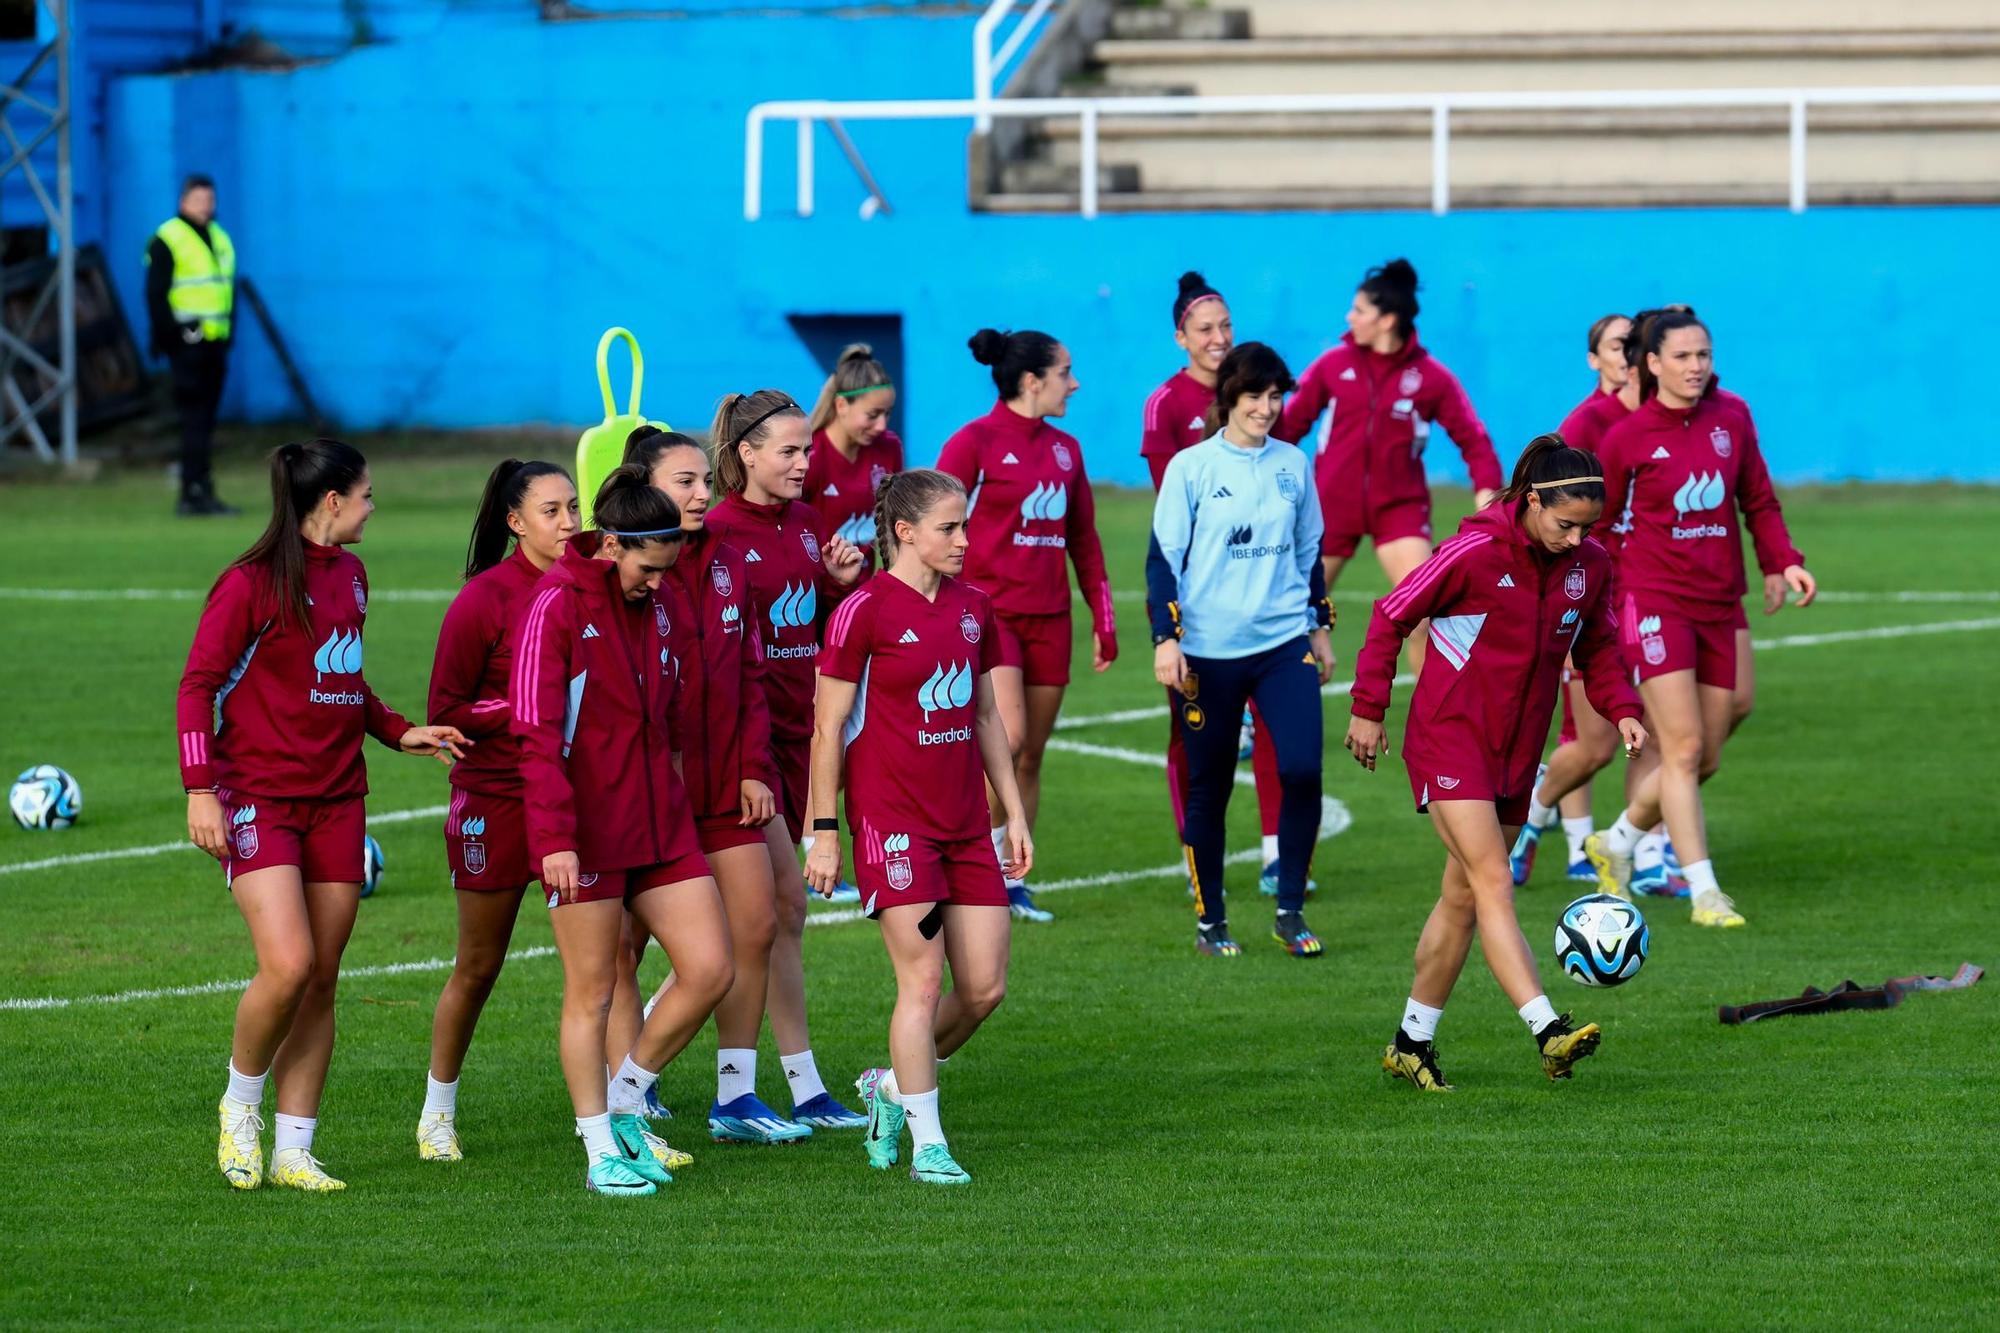 Las imágenes del histórico entrenamiento de la selección española femenina en Burgáns